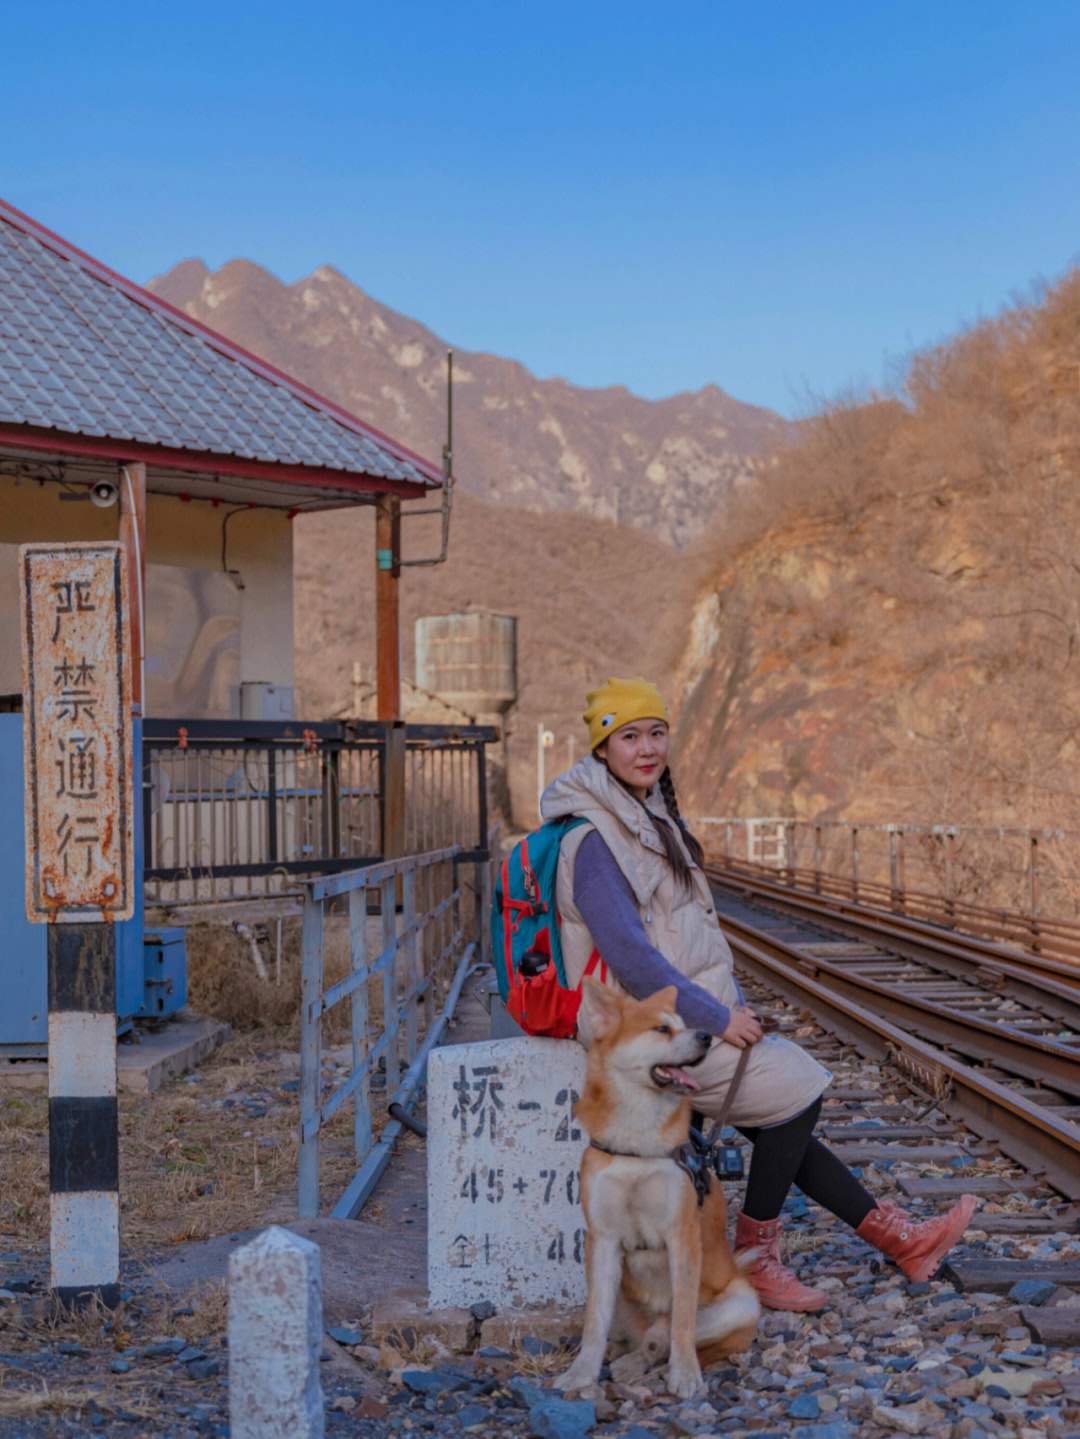 京郊徒步丨为什么京门铁路有点日本风?